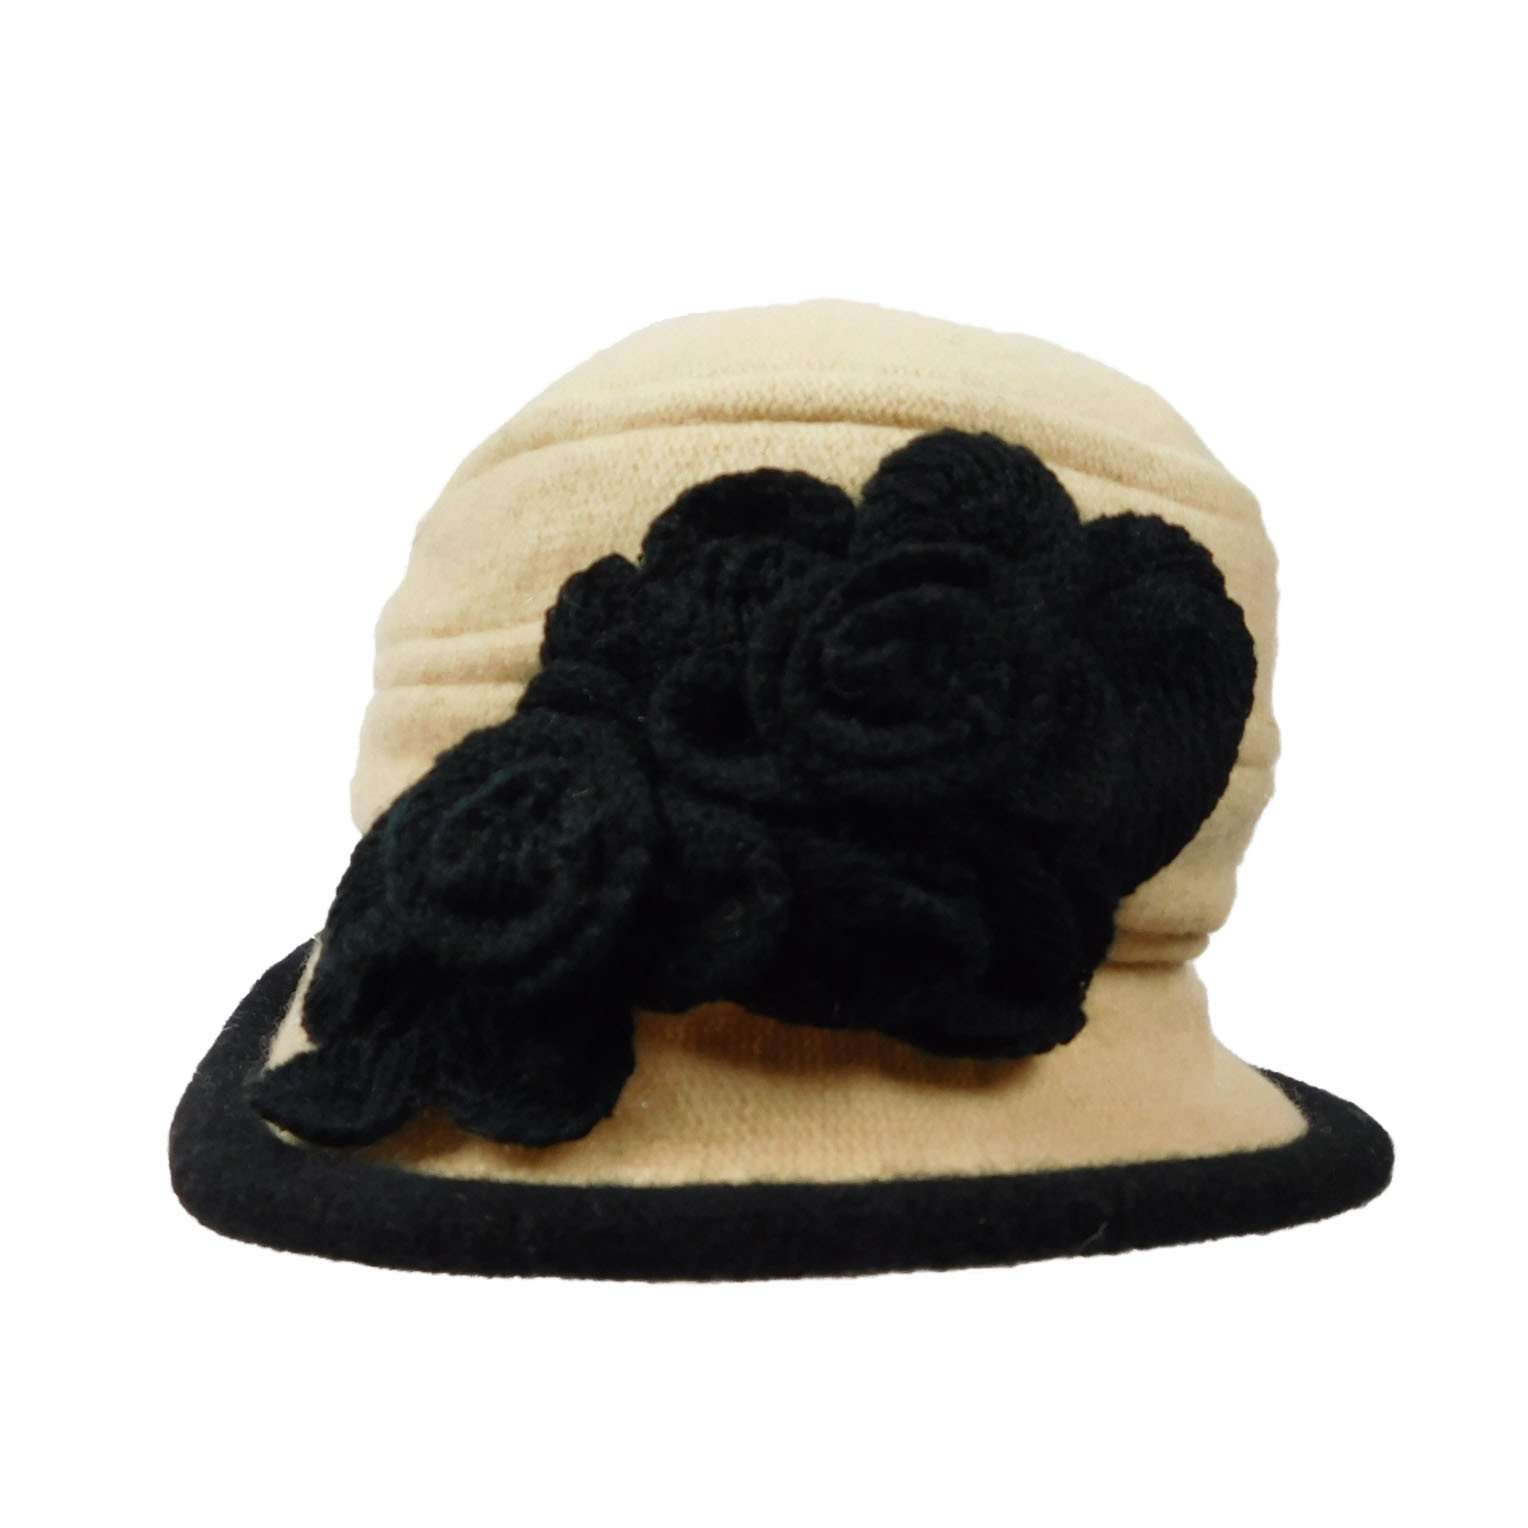 Wool Bucket Hat with Crochet Flower Beanie Jeanne Simmons js7140bg Beige  